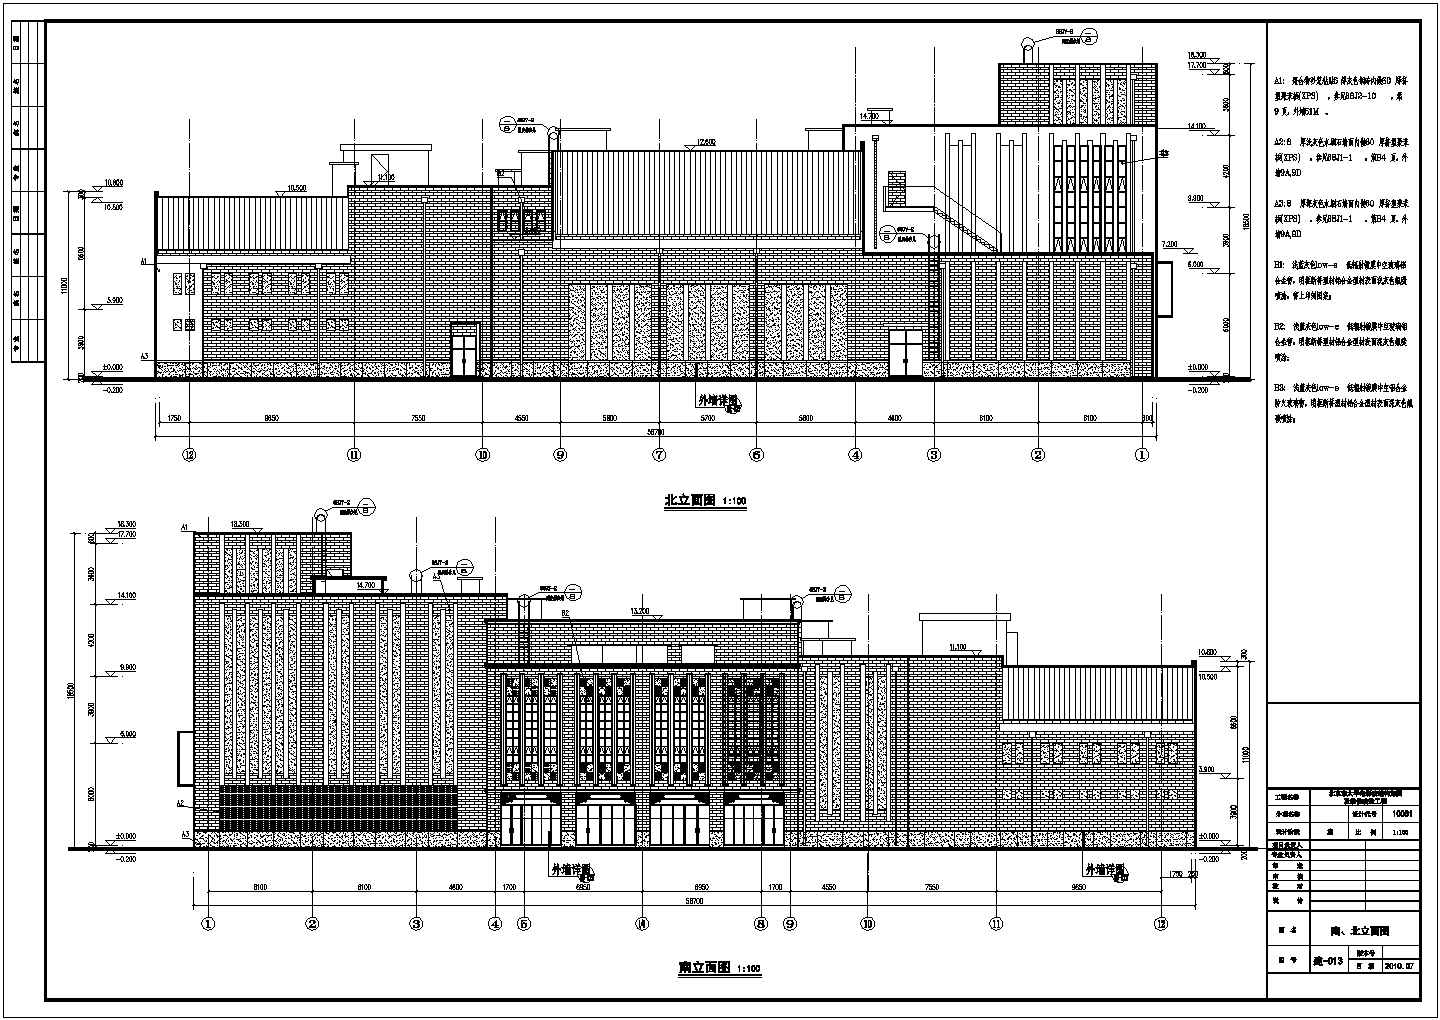 北京市四层电影院结构加固及装修设计施工图